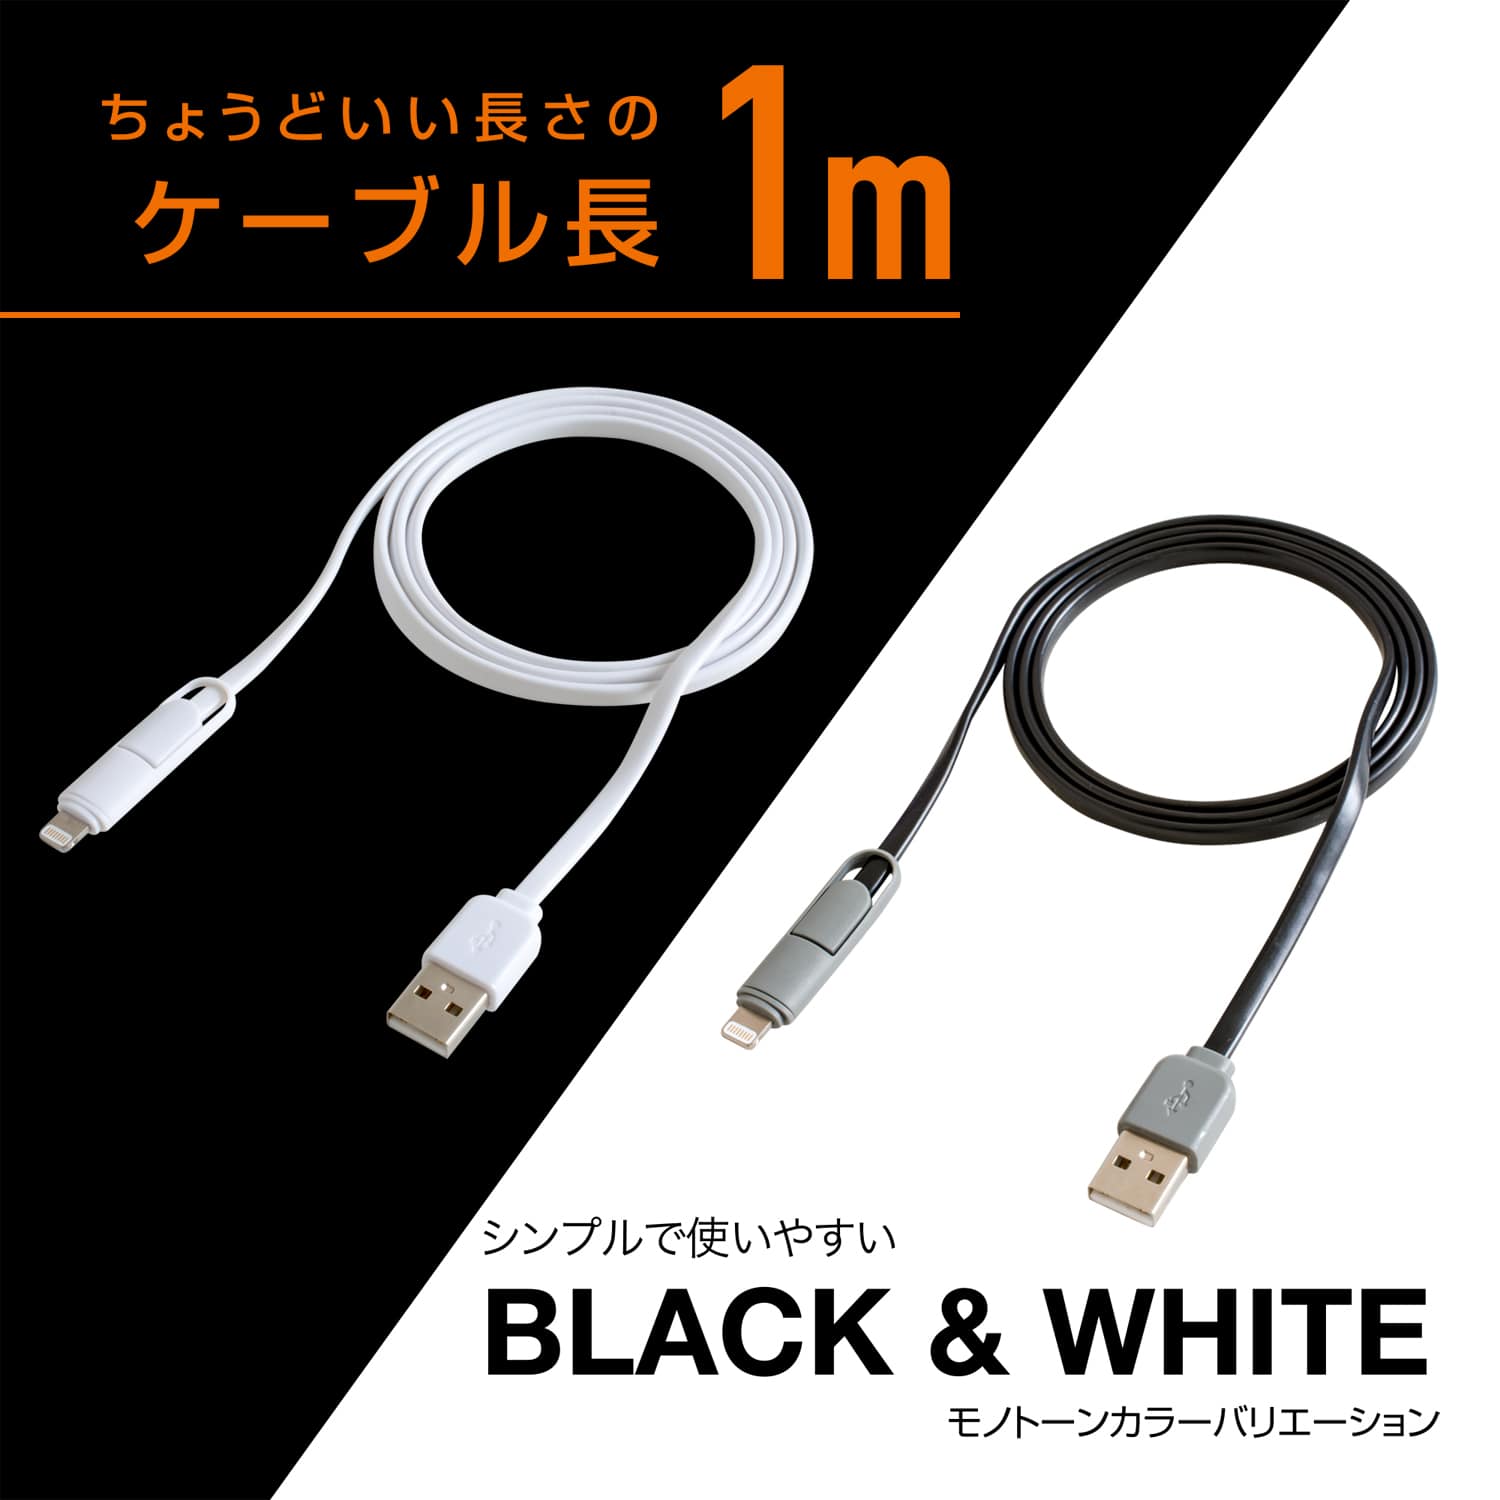 丁度いい長さのケーブル長1m シンプルで使いやすい BLACK & WHITE モノトーンカラーバリエーション